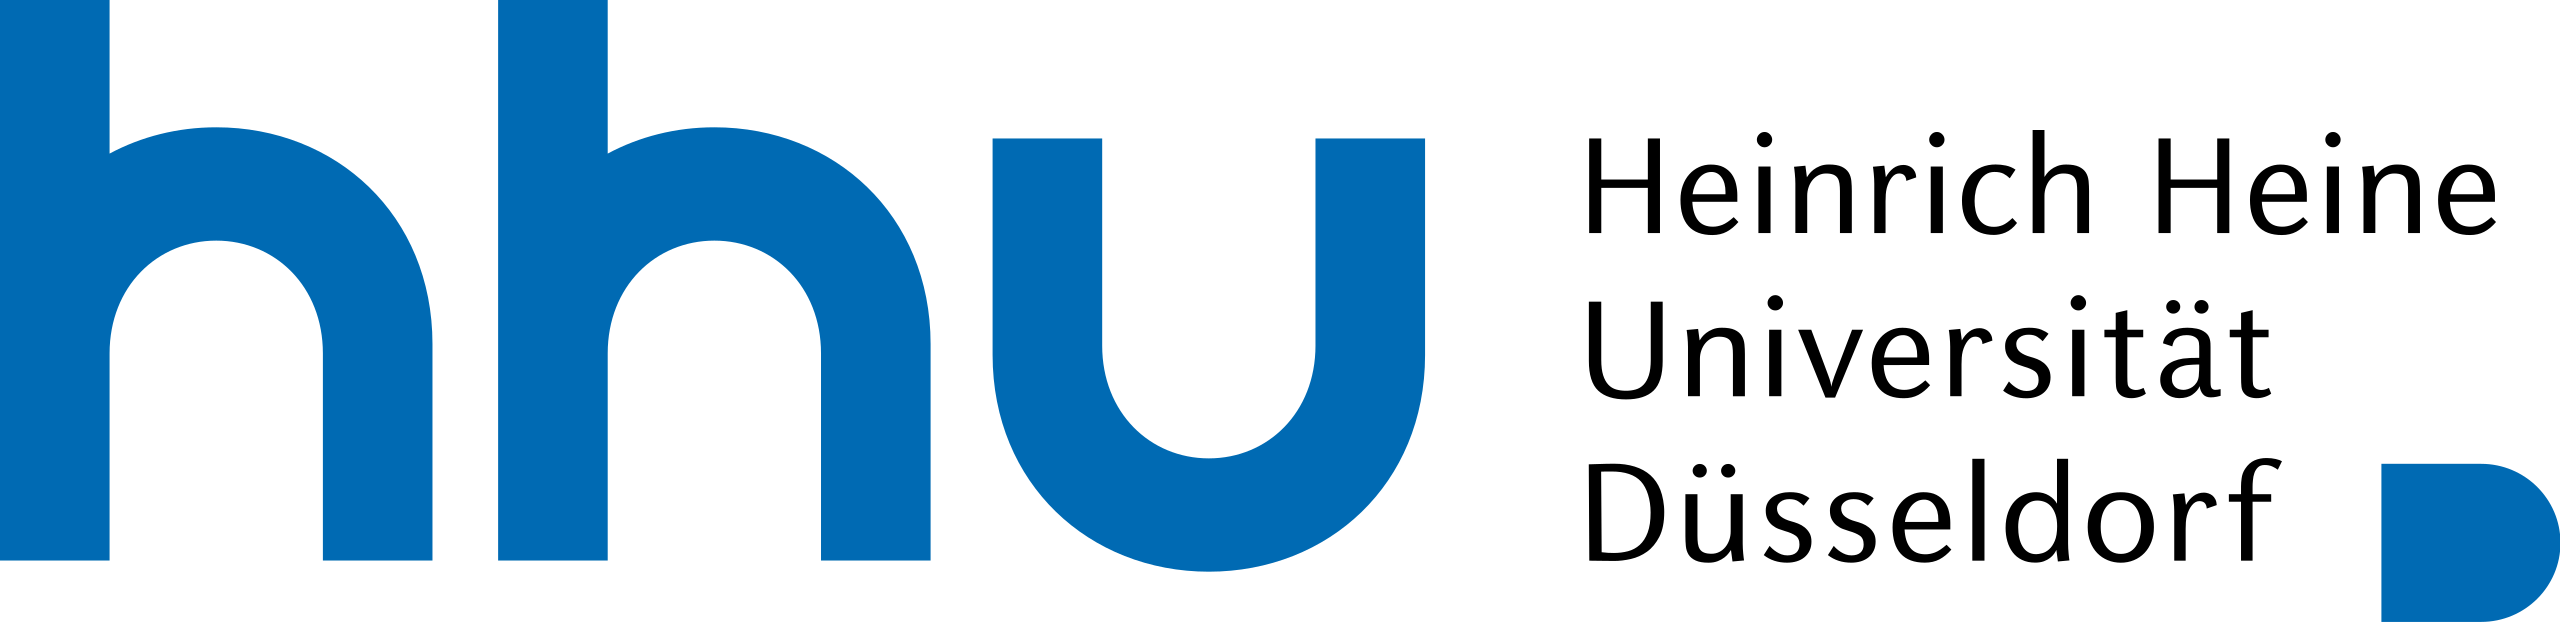 Дюссельдорфский университет логотип.png